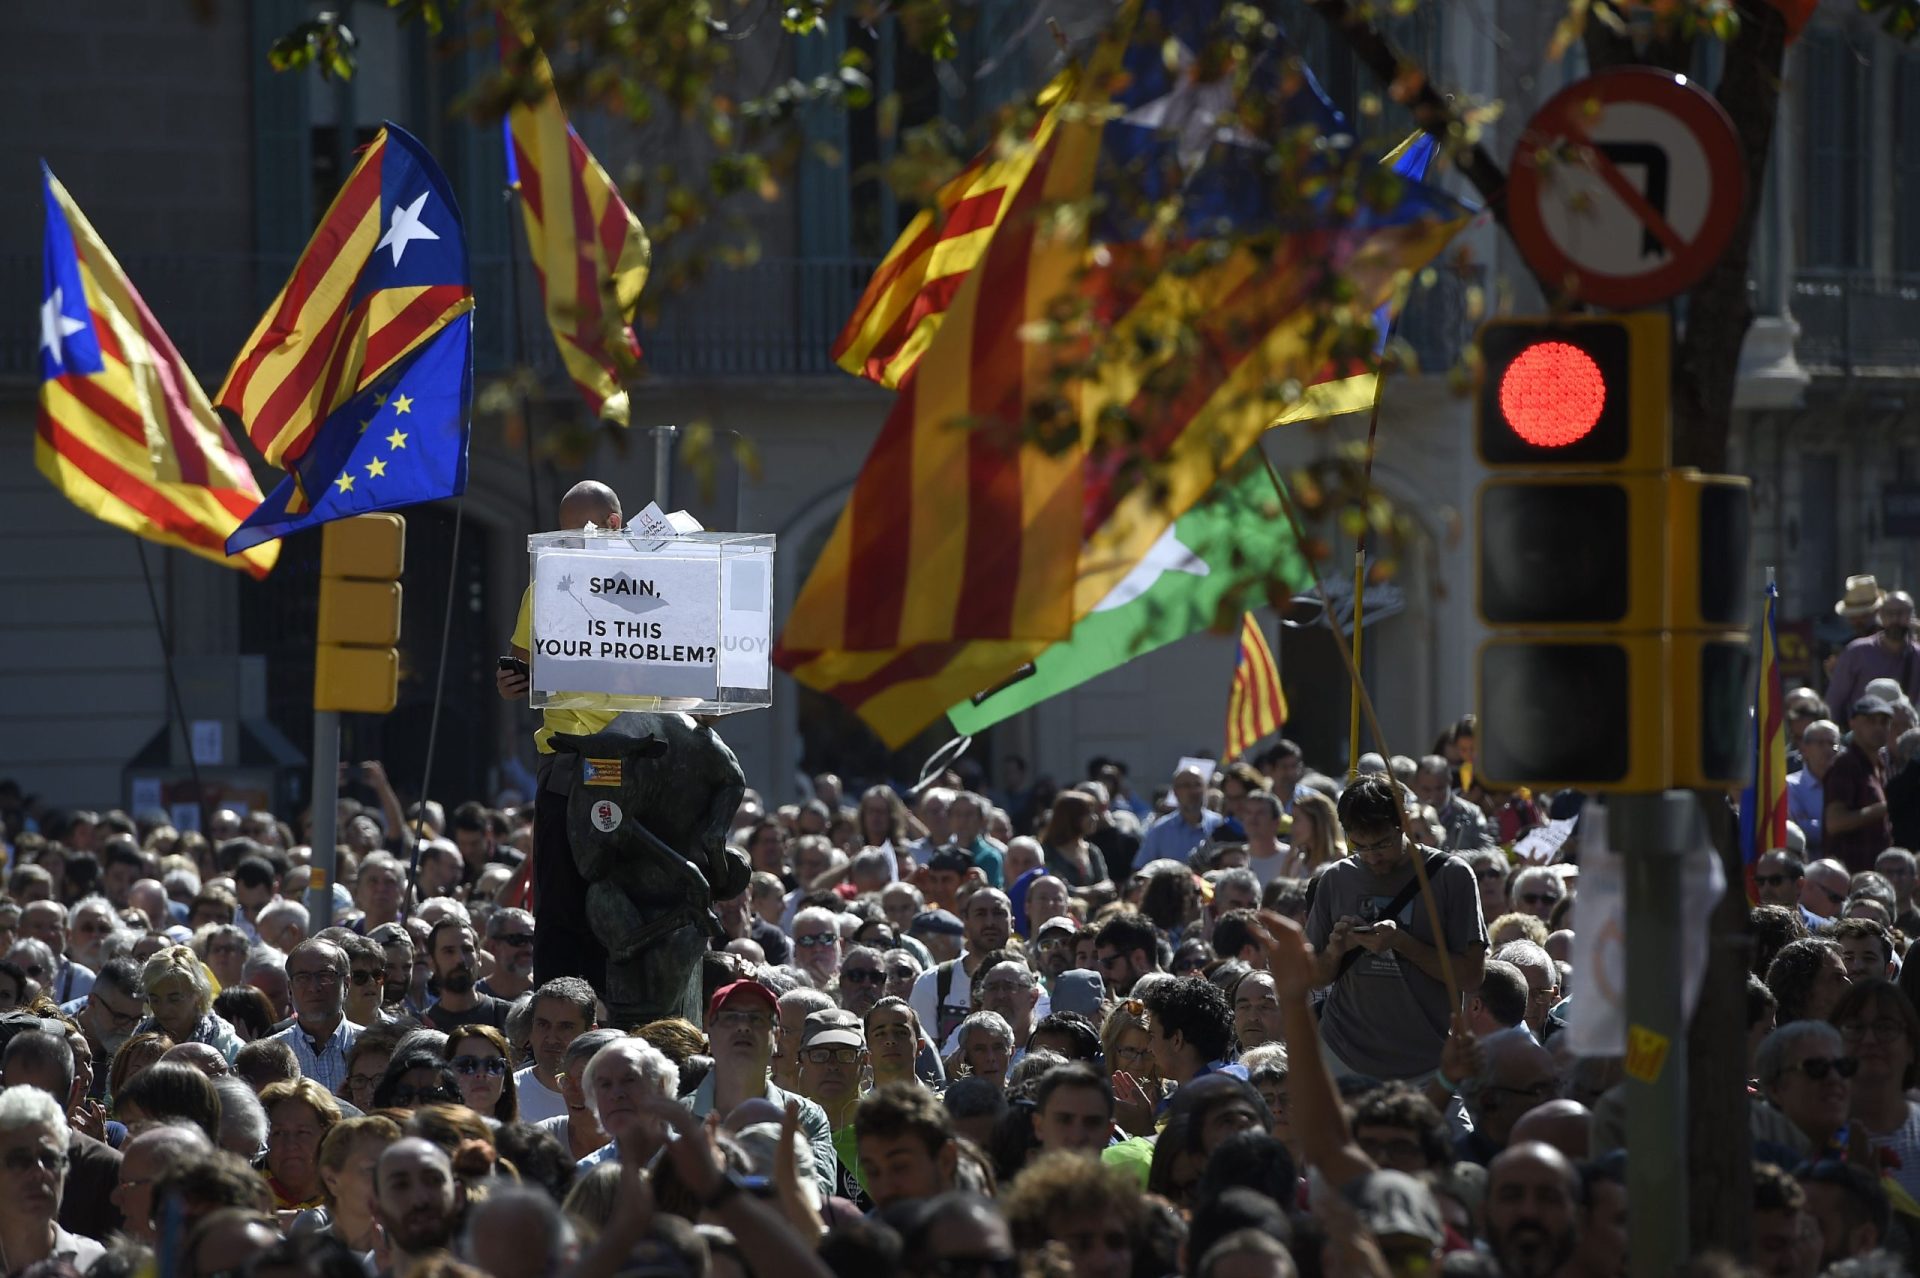 Autoridades detêm 14 altos dirigentes do governo da Catalunha em ação contra referendo